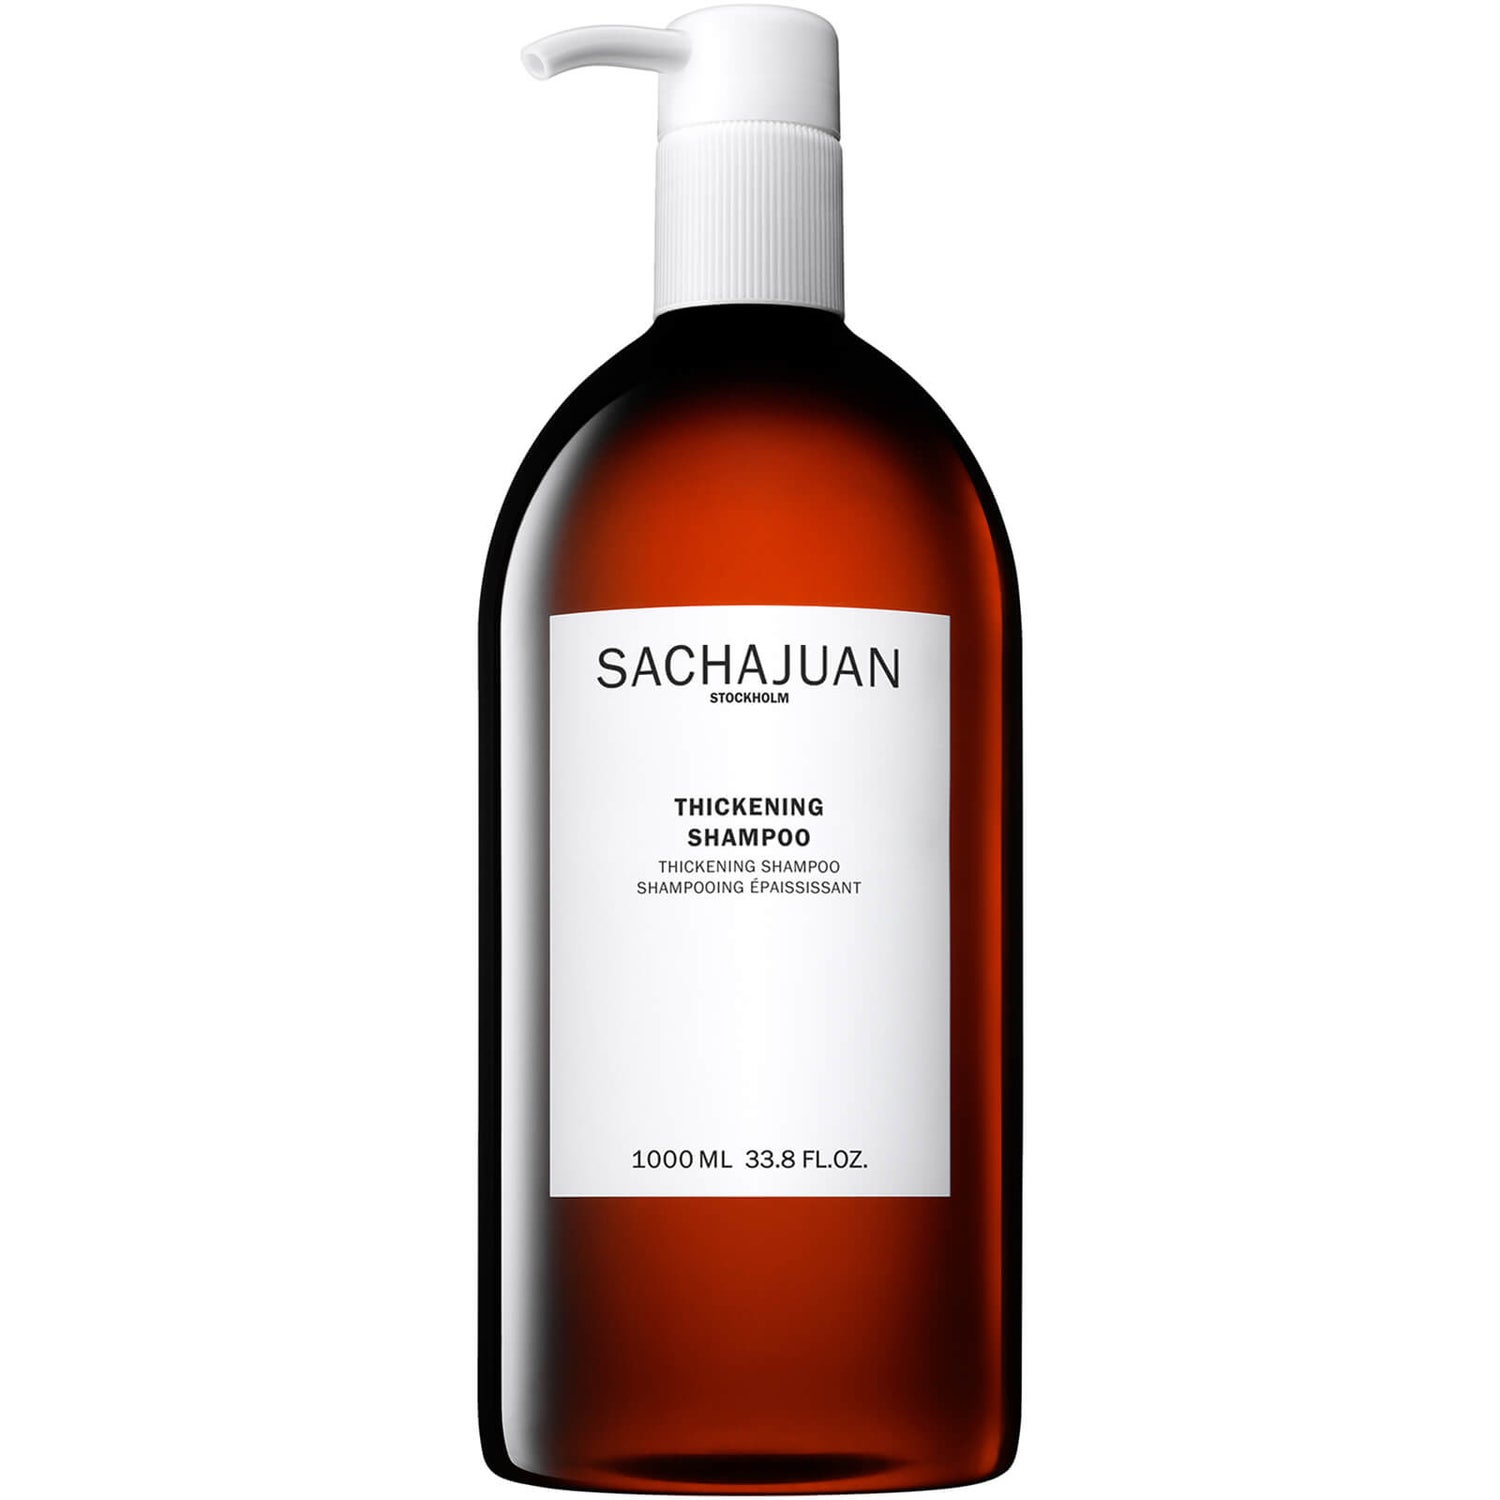 Sachajuan Thickening Shampoo 1000 ml